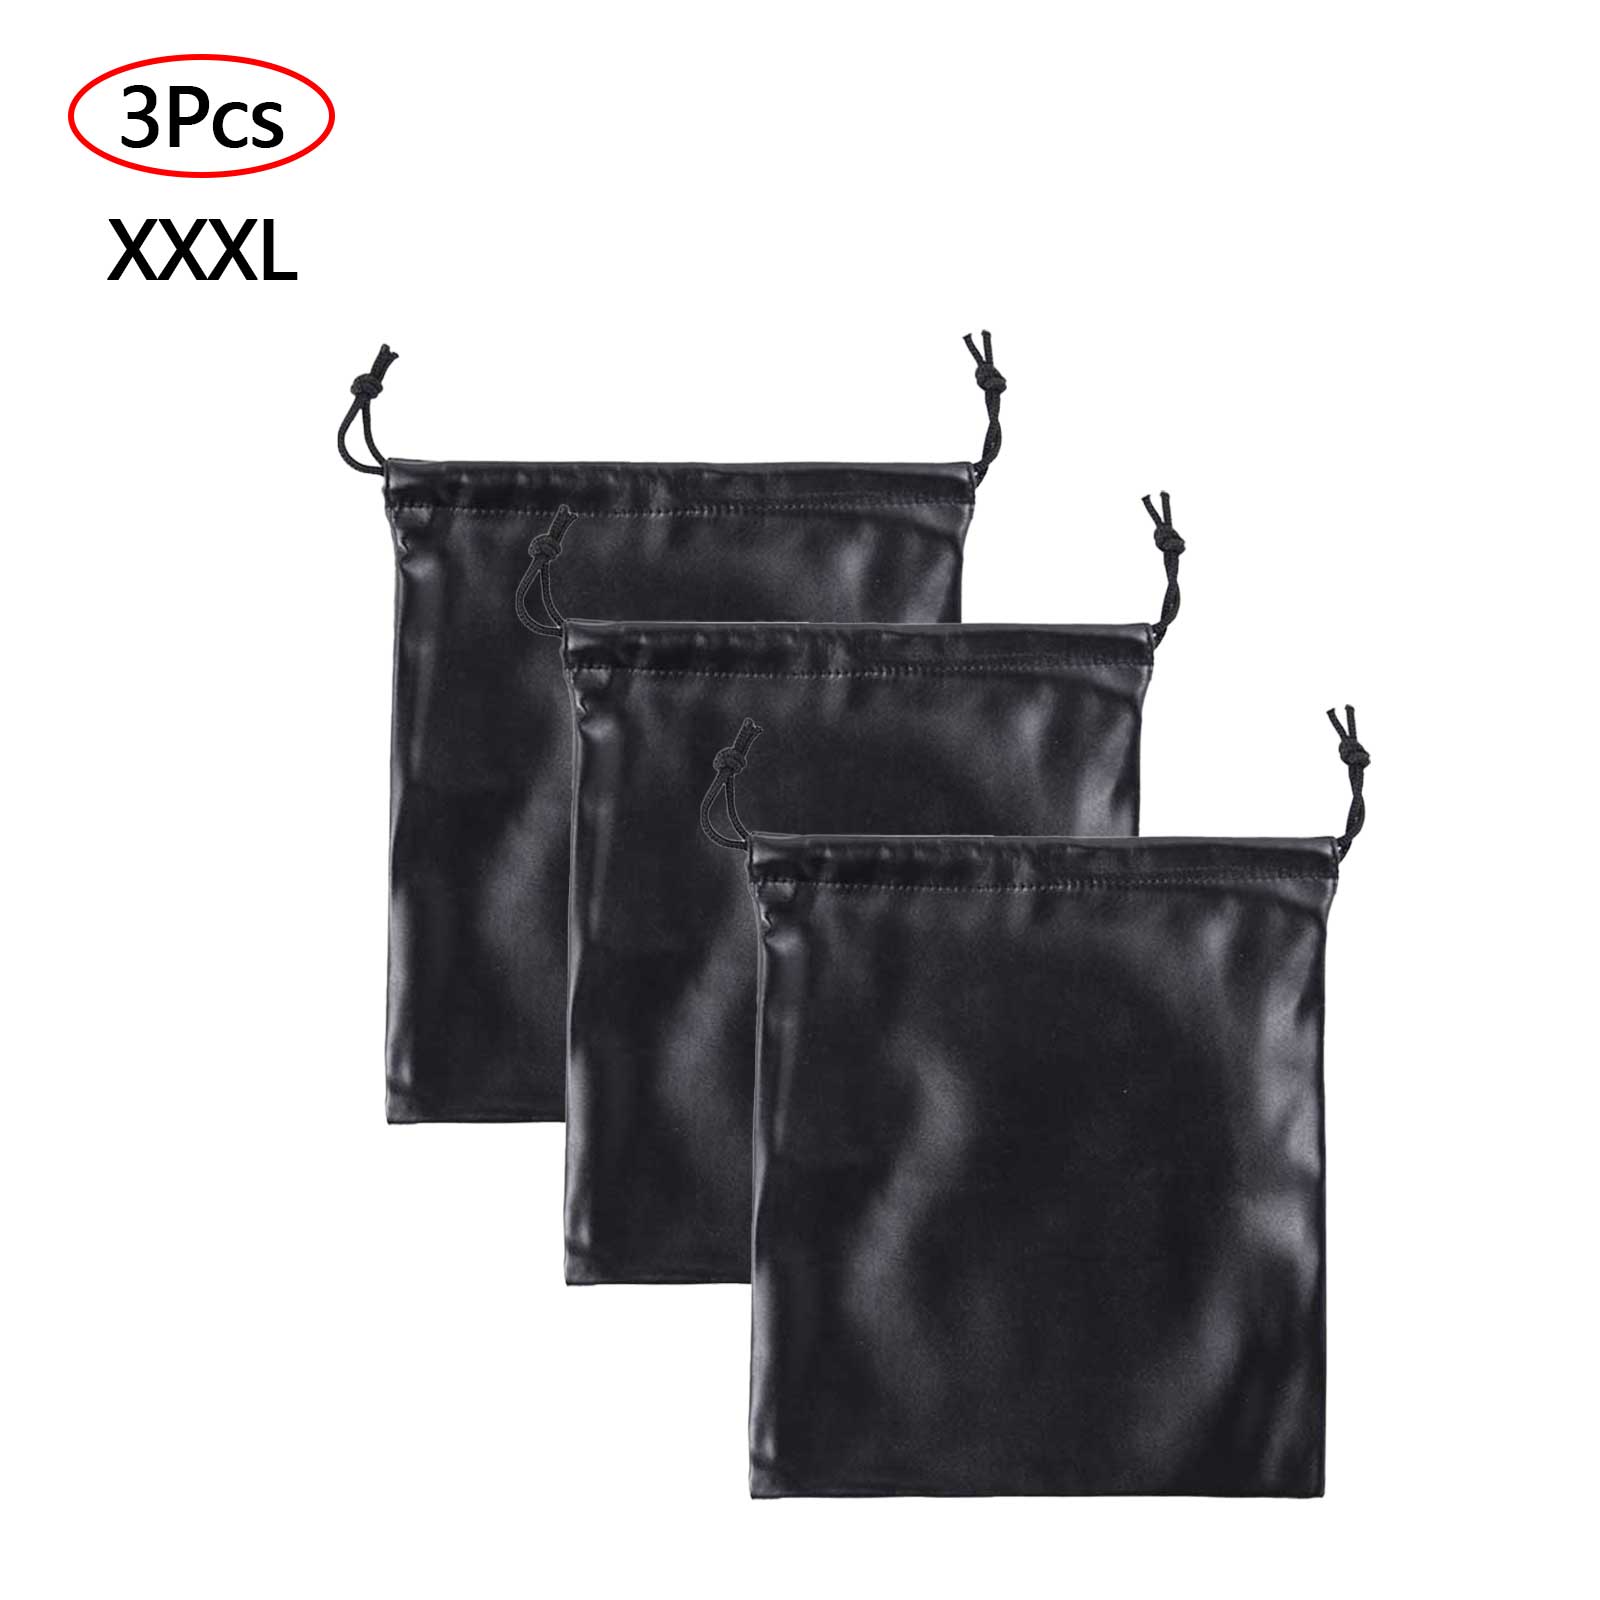 Kinky Cloth 200345142 XXXL Waterproof PU Leather Drawstring Storage Bag 3 Pcs